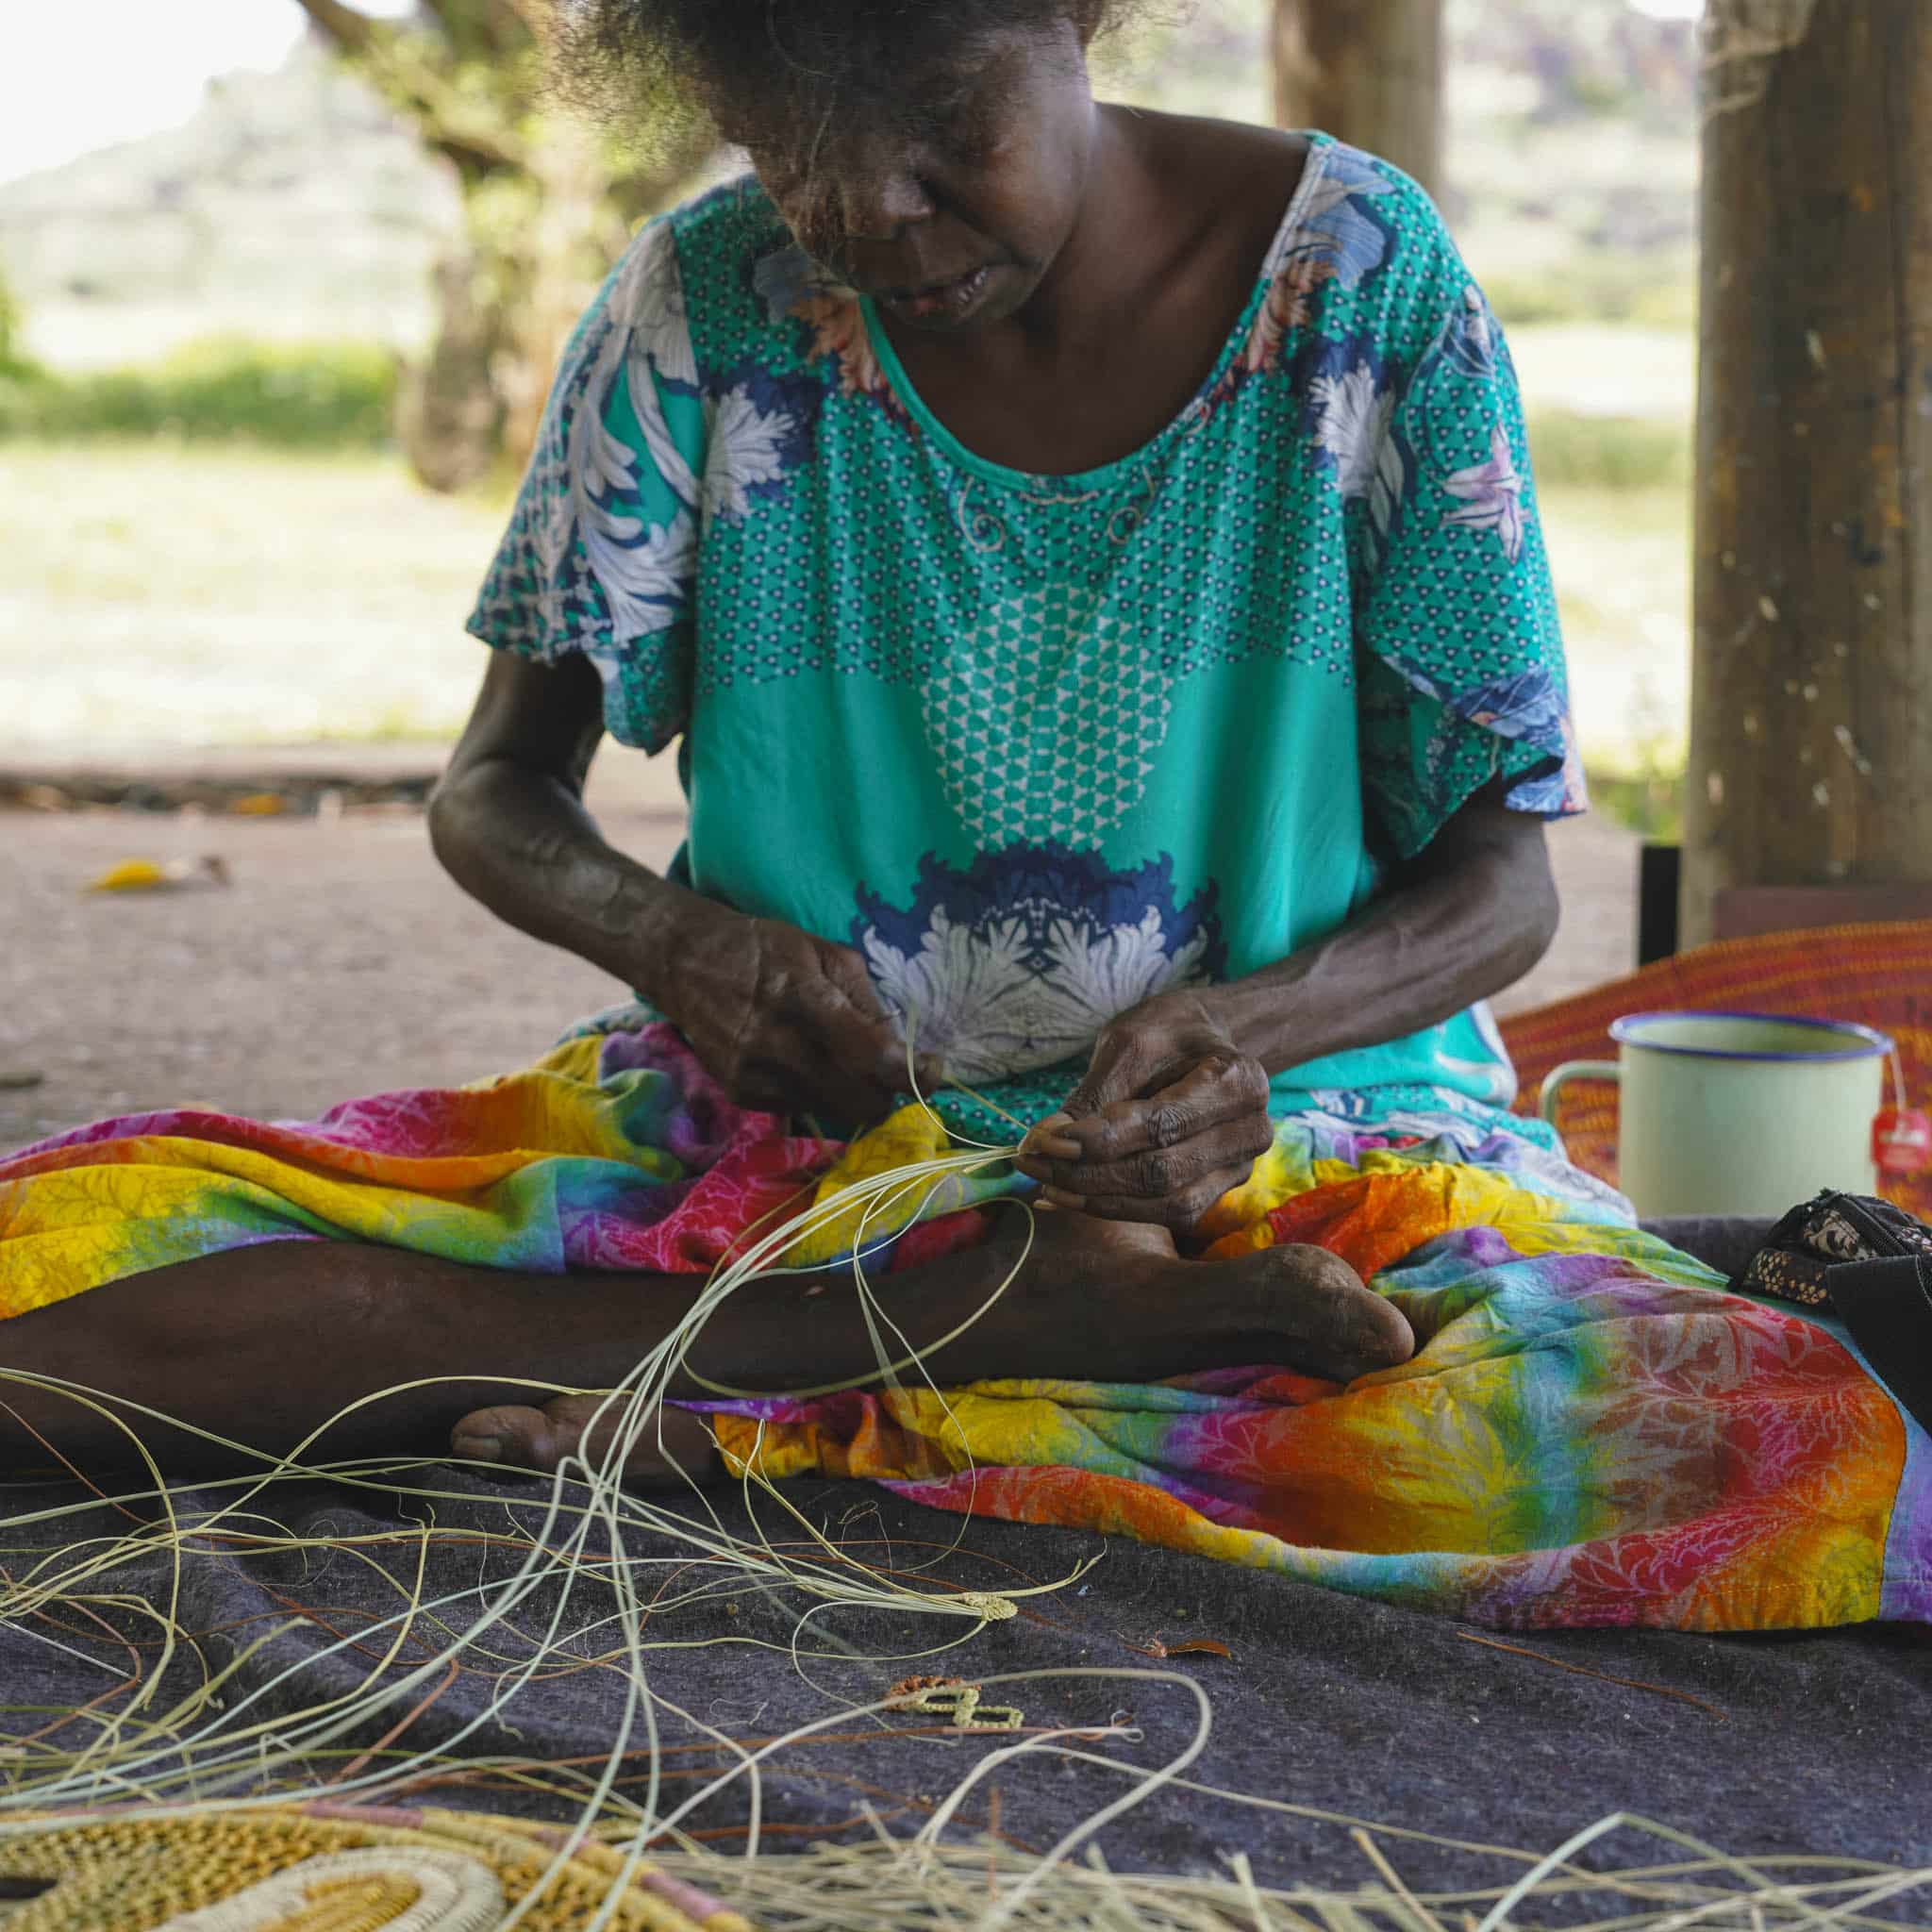 Women’s Traditional Weaving Workshops in Darwin